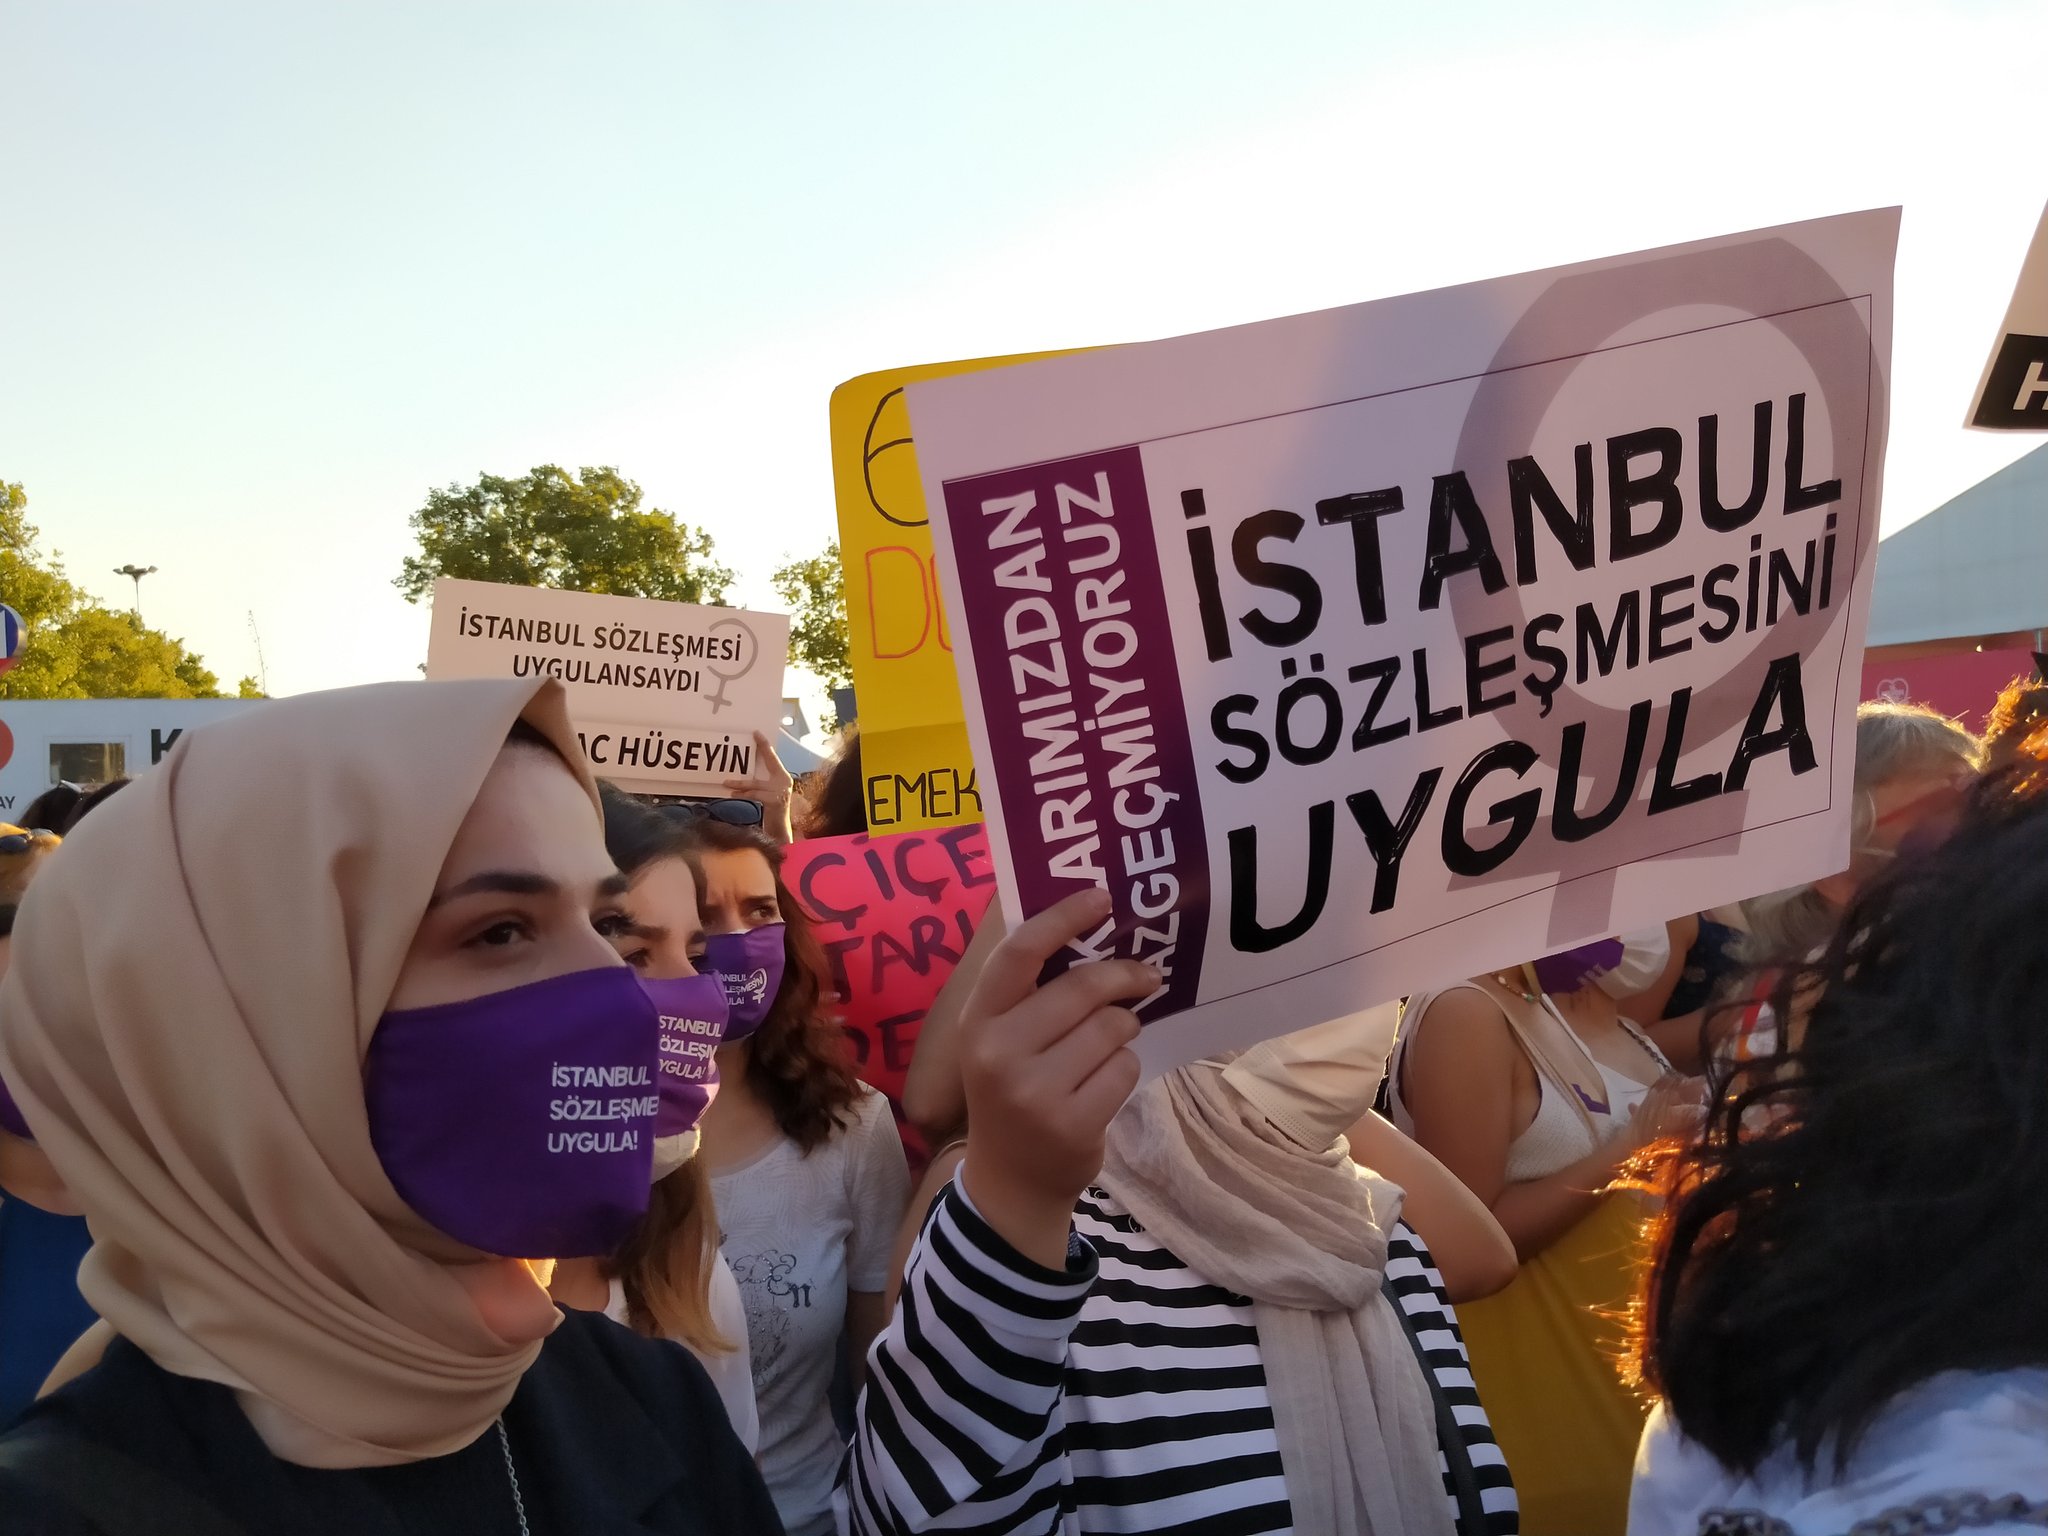 "İstanbul Sözleşmesi'nden şimdi daha fazla söz ediliyor"